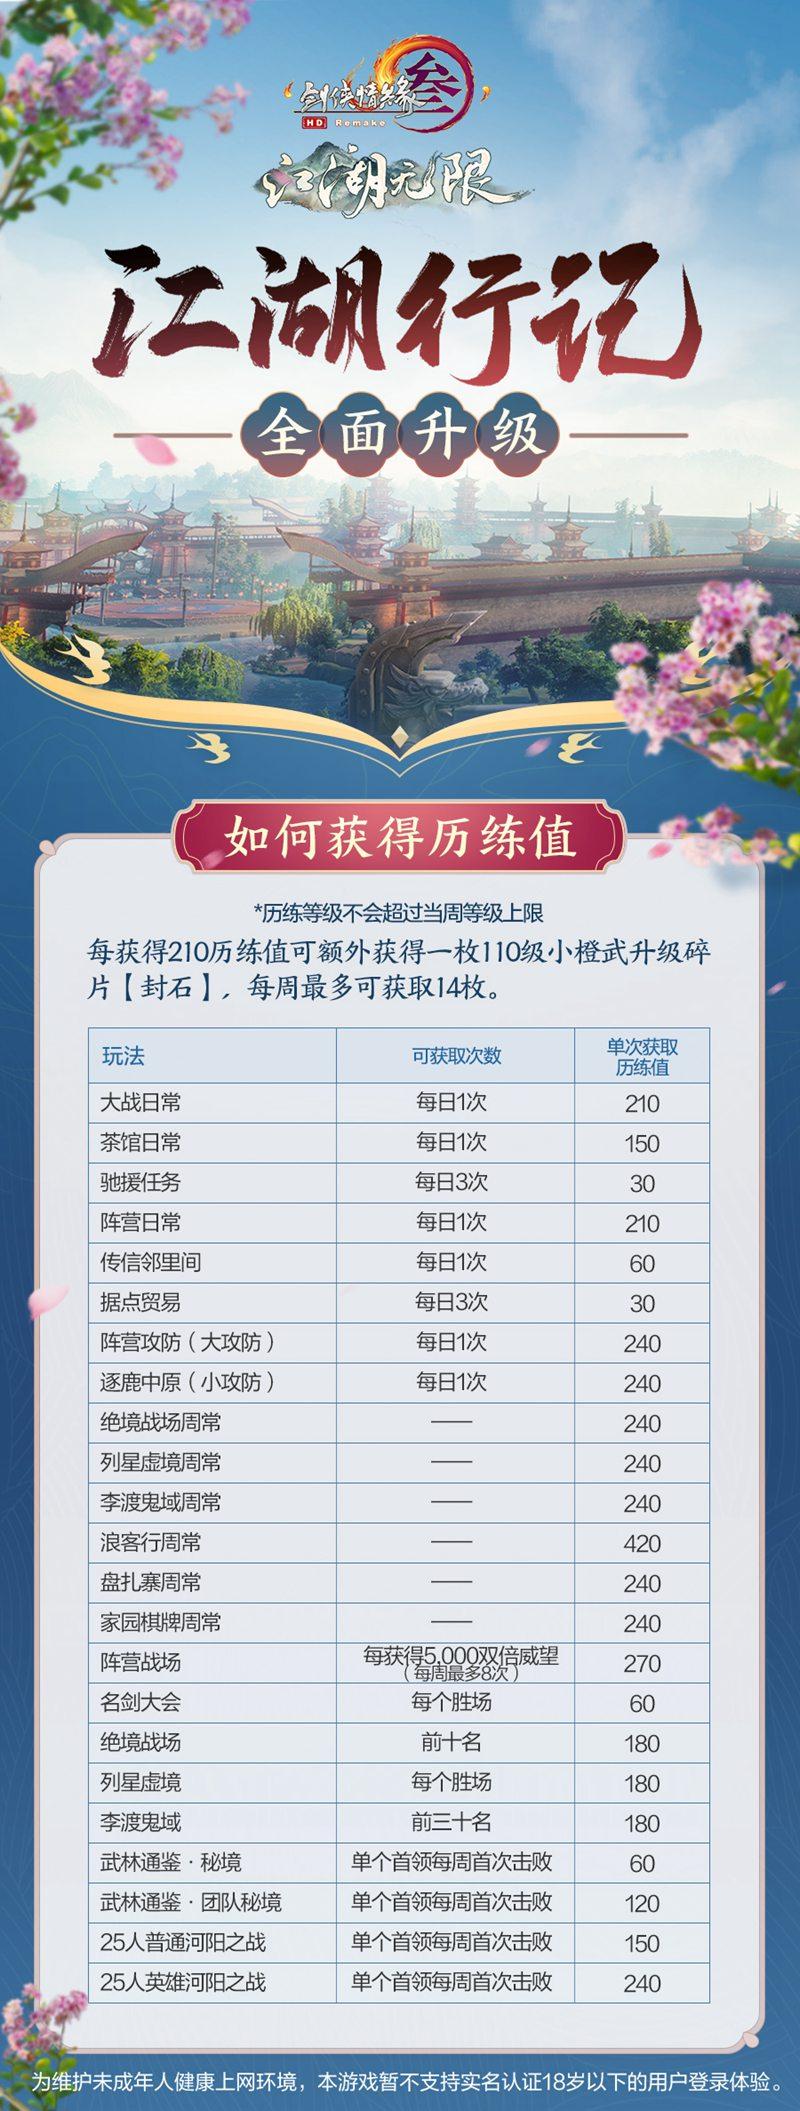 《剑网3》江湖行记全面升级 超多奖励全民可得